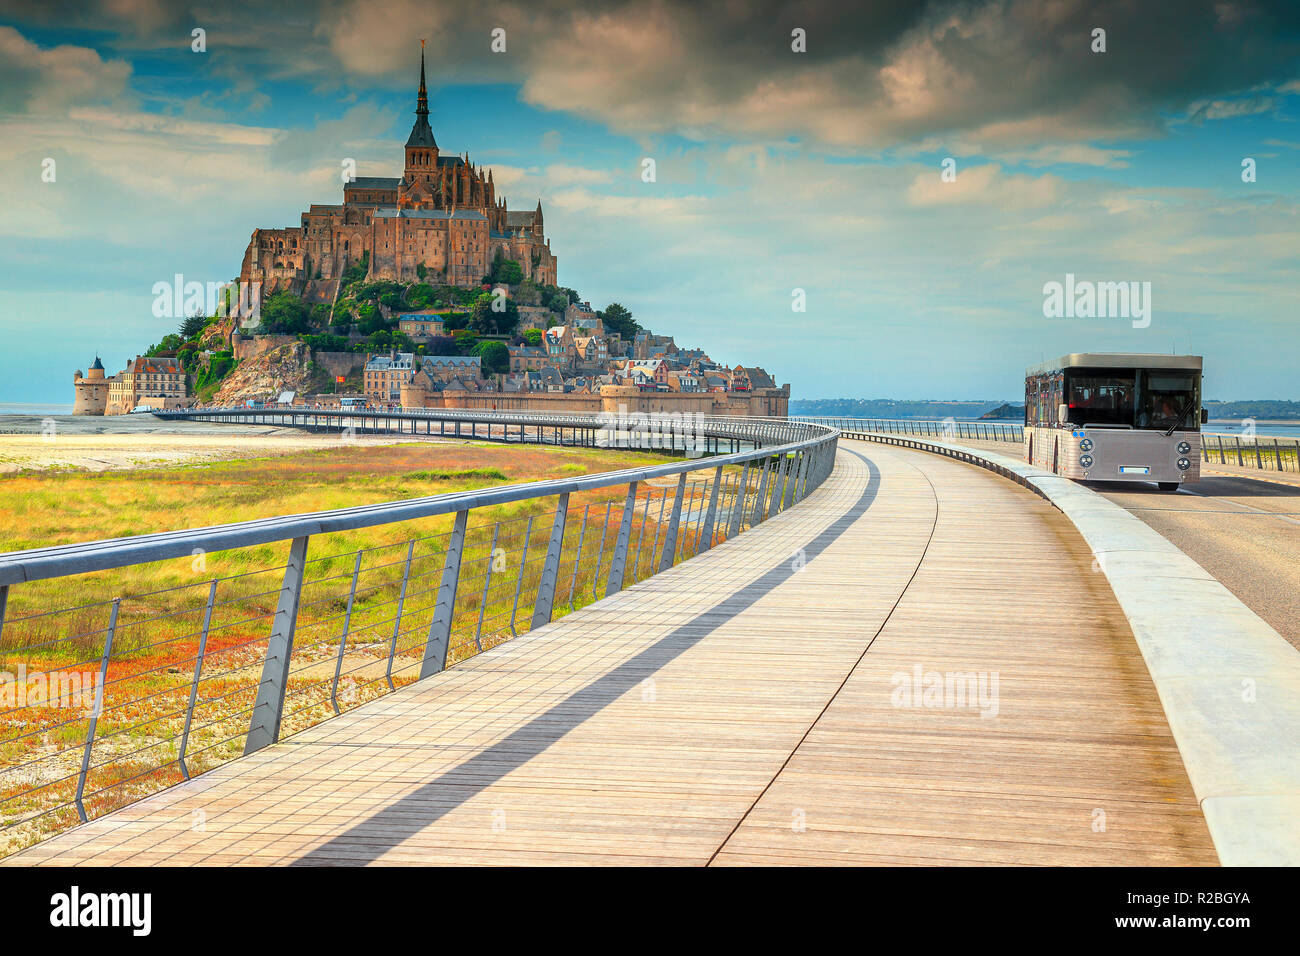 Lieu touristique célèbre, l'architecture fantastique, belle Mont Saint Michel cathédrale avec pont moderne et touristique bus, Normandie, France, Europe Banque D'Images